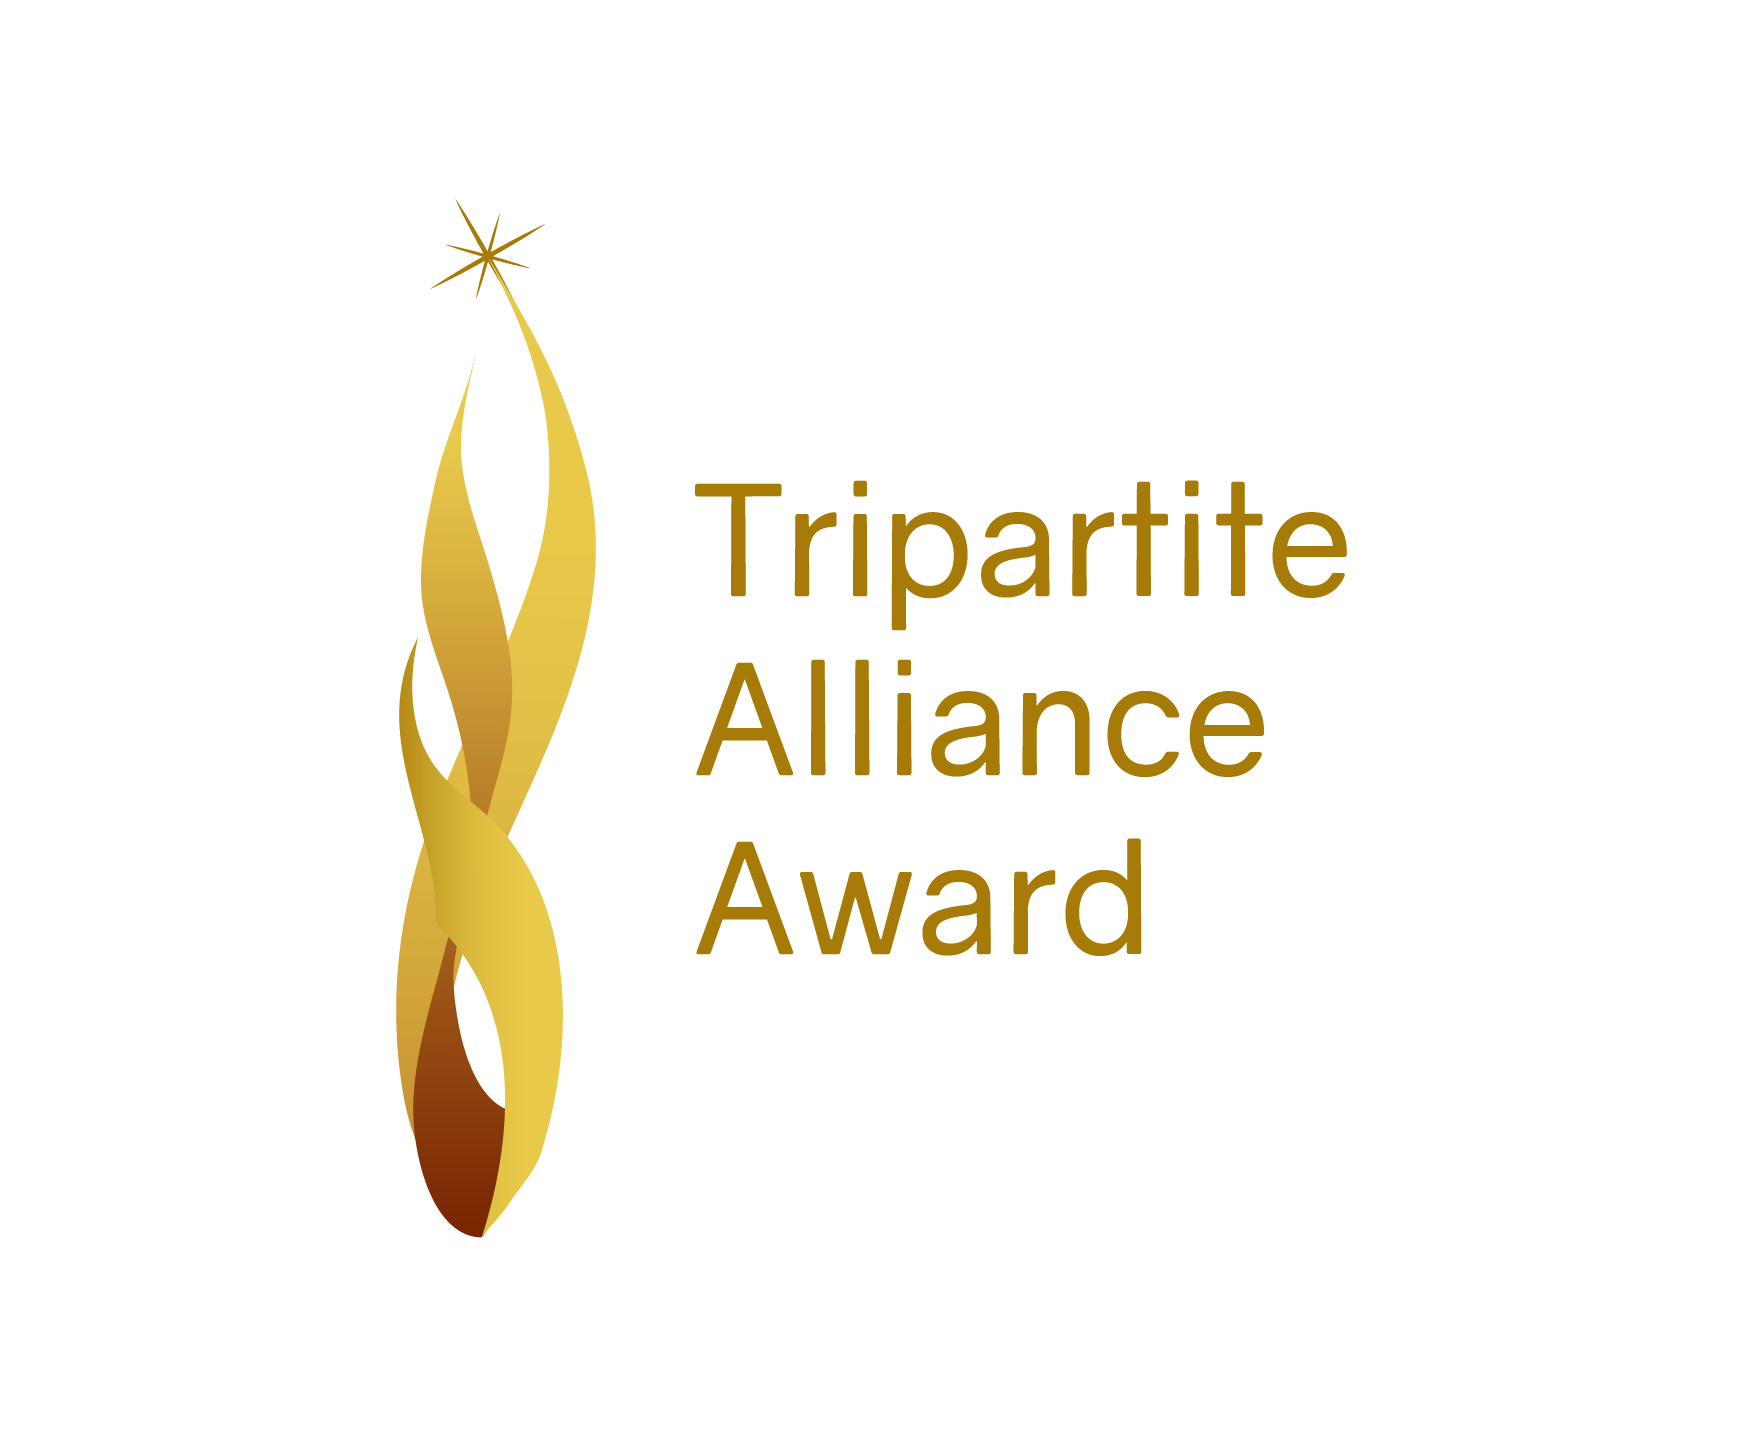 Tripartite Alliance Award logo